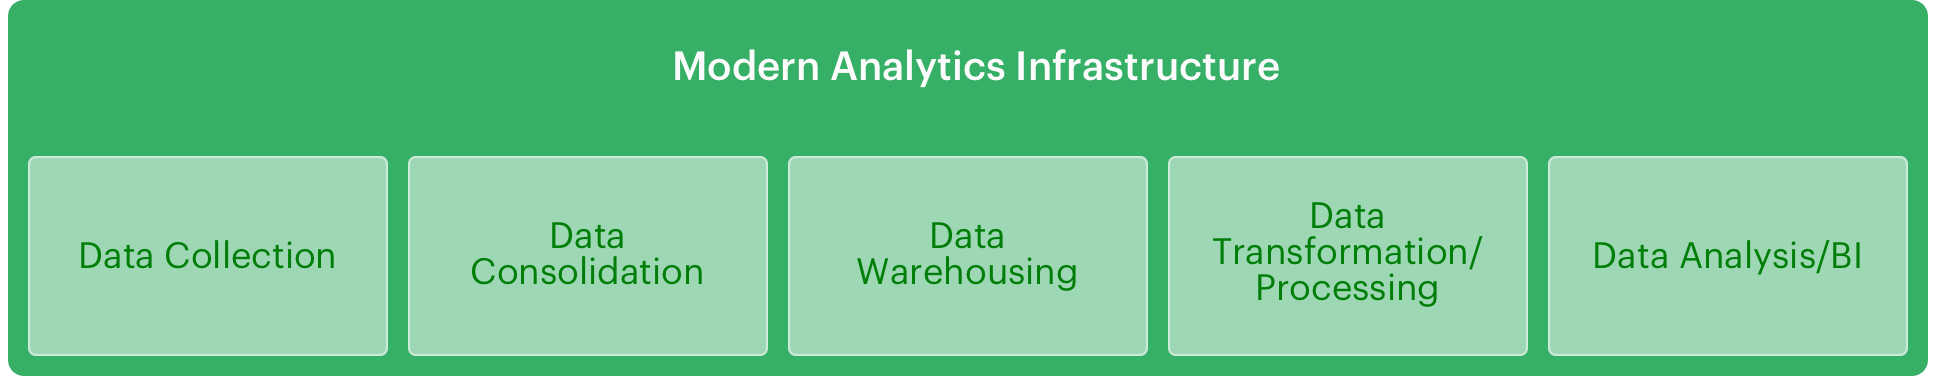 Modern Analytics Infrastructure